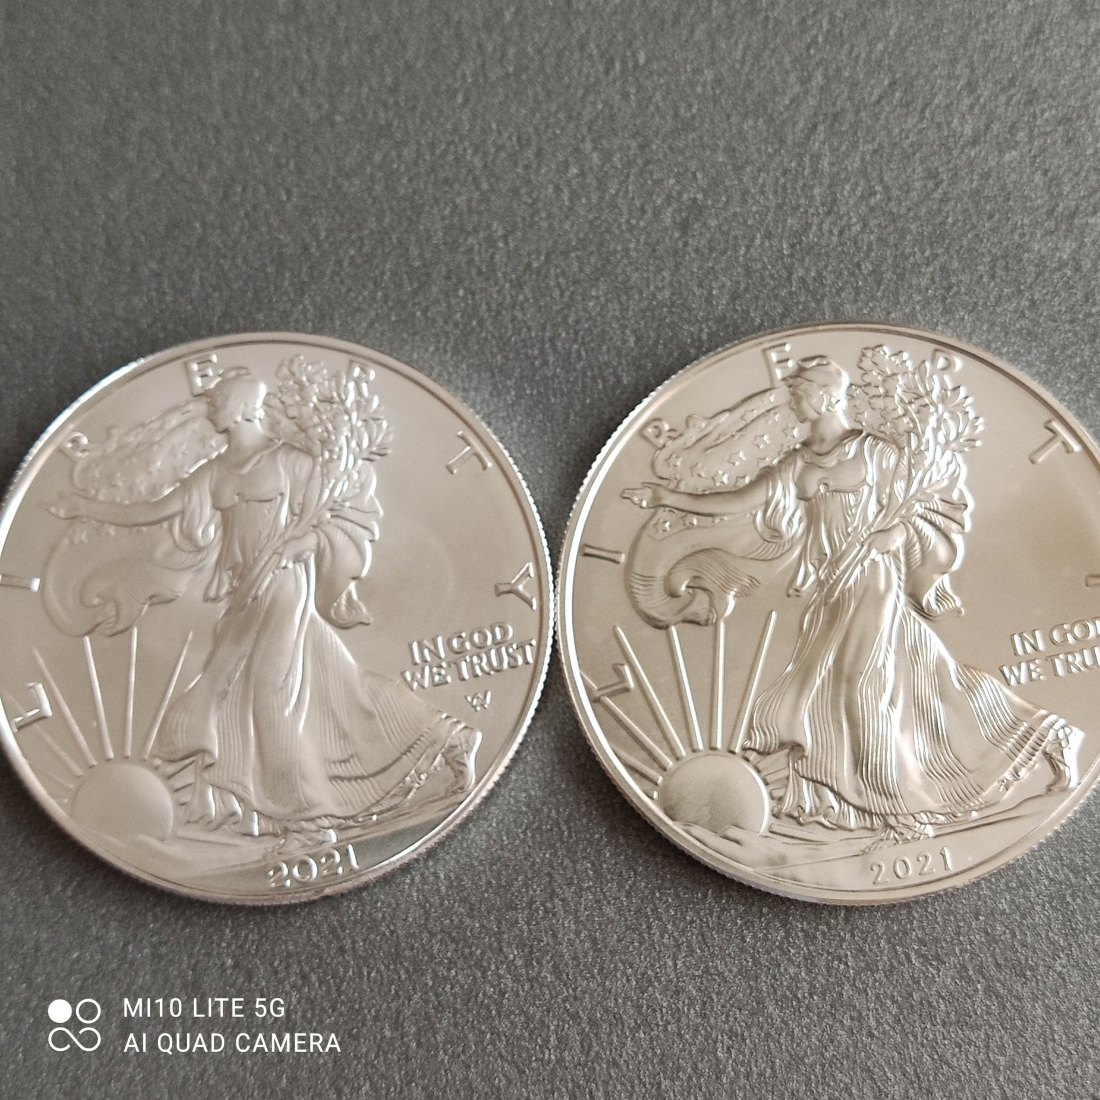  USA 2 x 1 Dollar American Eagle 2021 alt (Typ 1) und neu (Typ 2)   